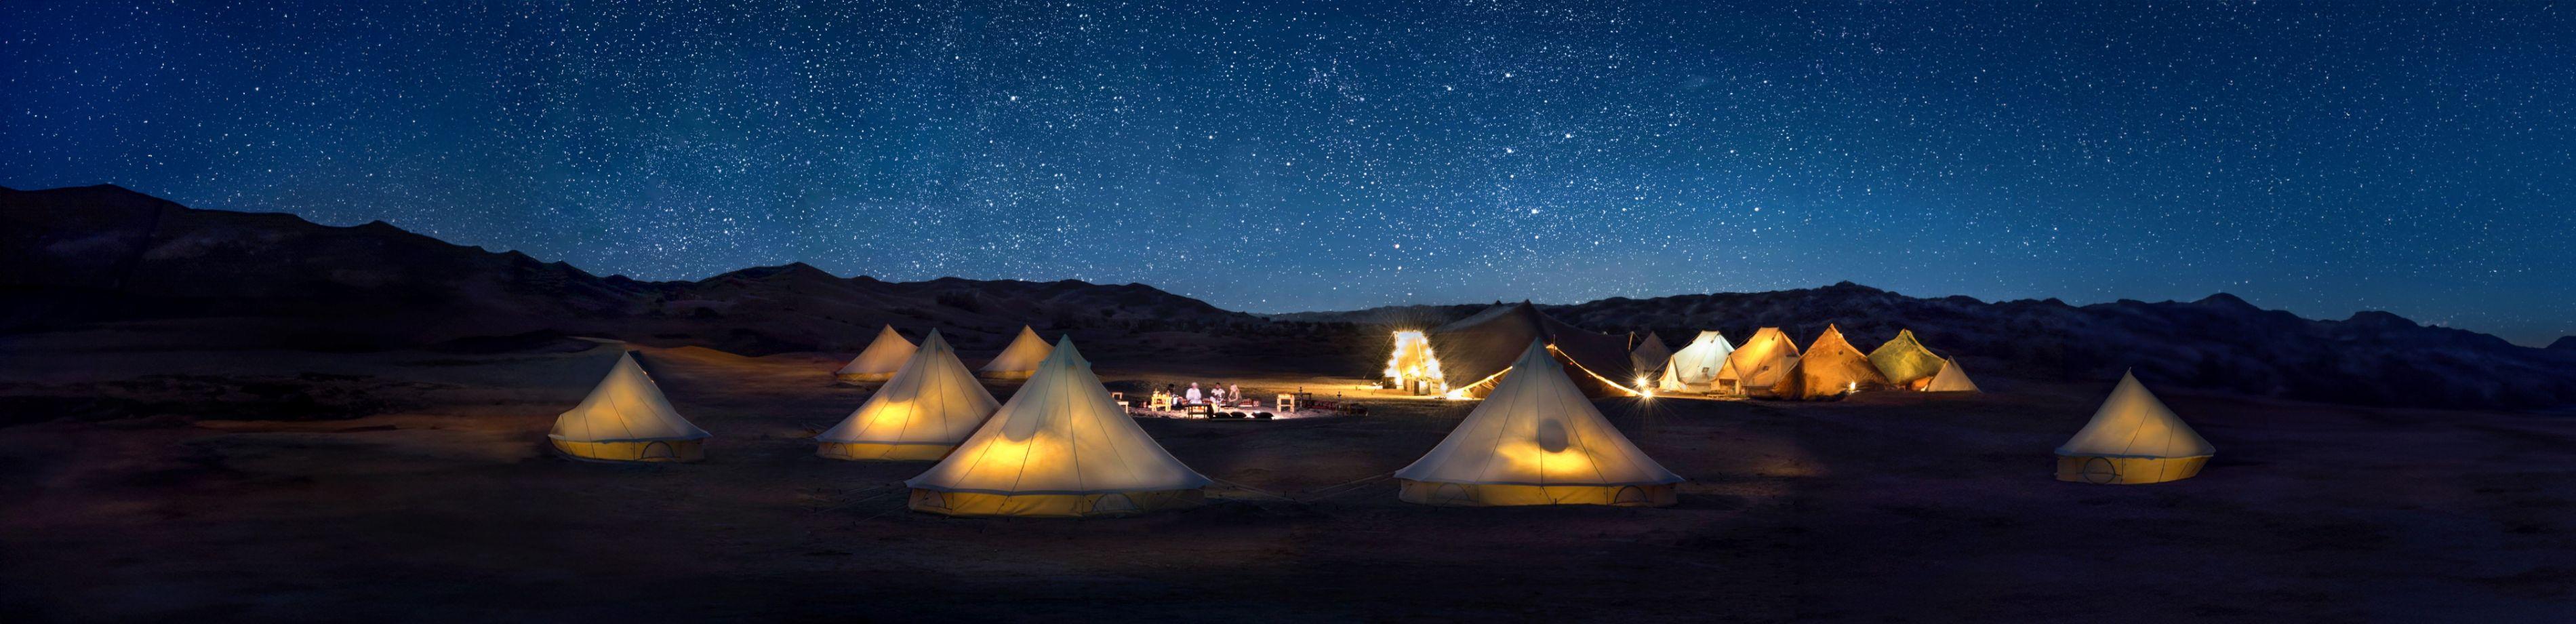 Oman: Notte magica nel deserto